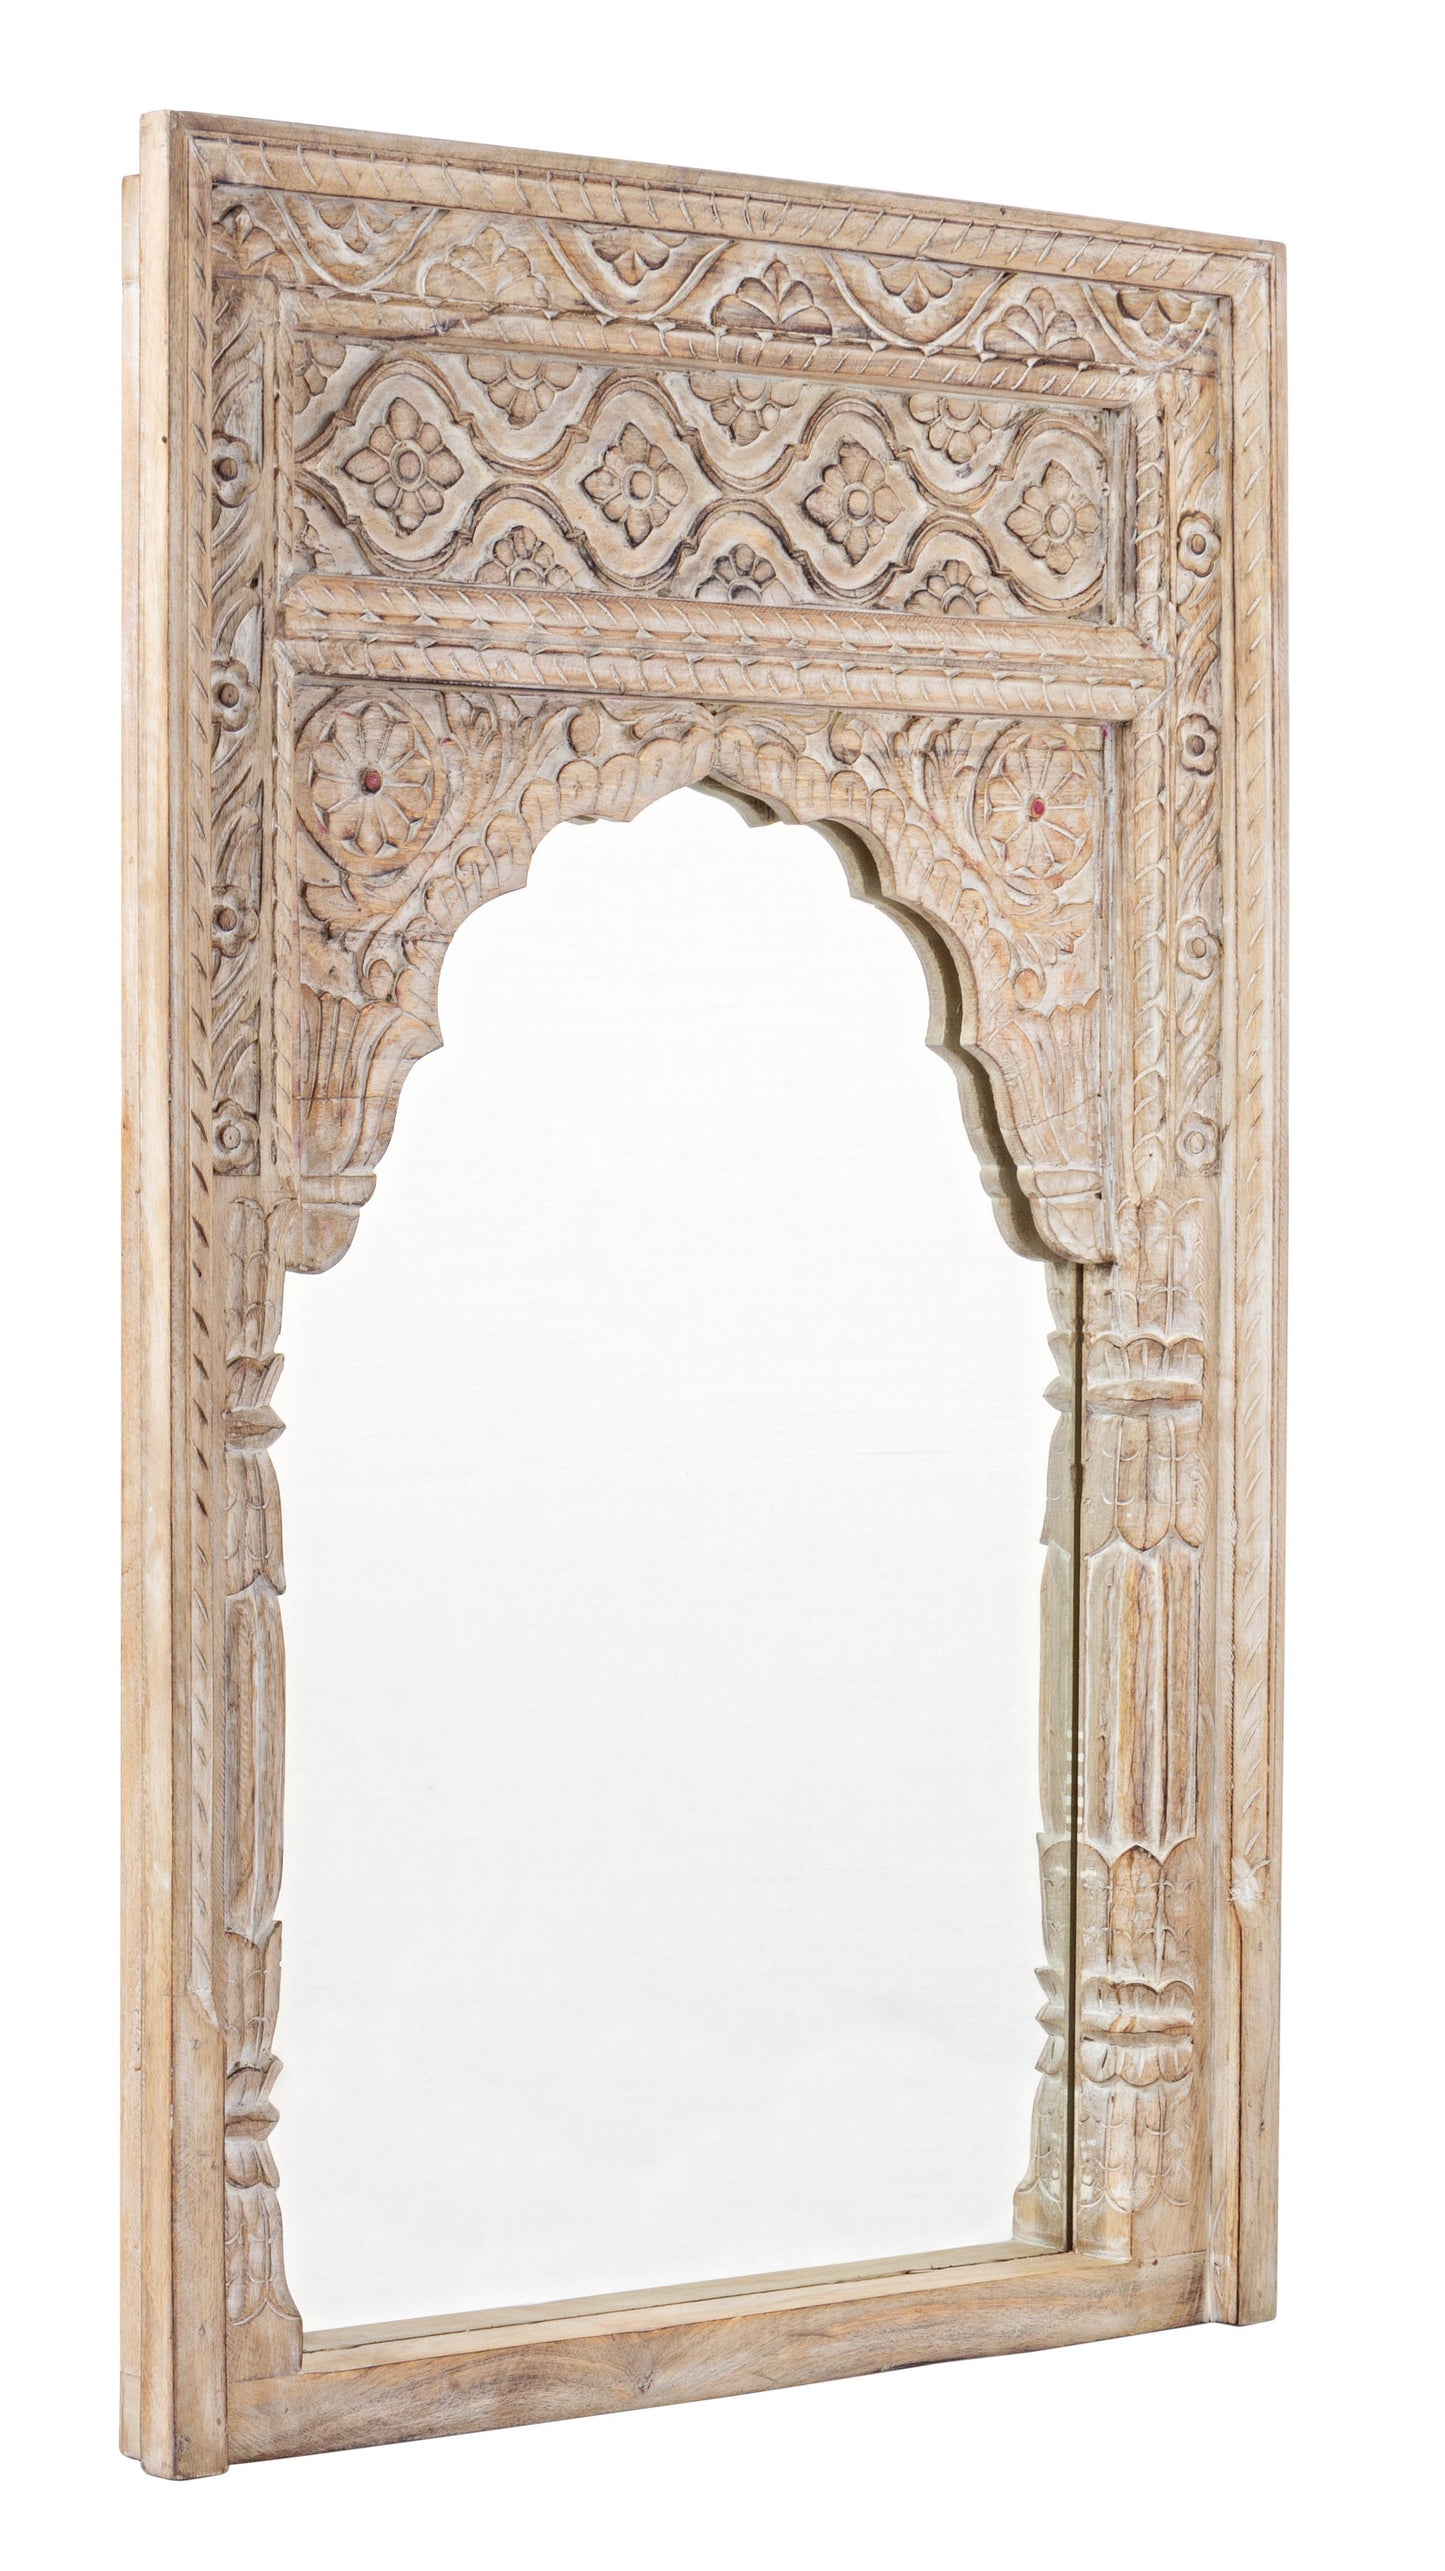 Specchio etnico finestra indiana in legno massiccio decorato